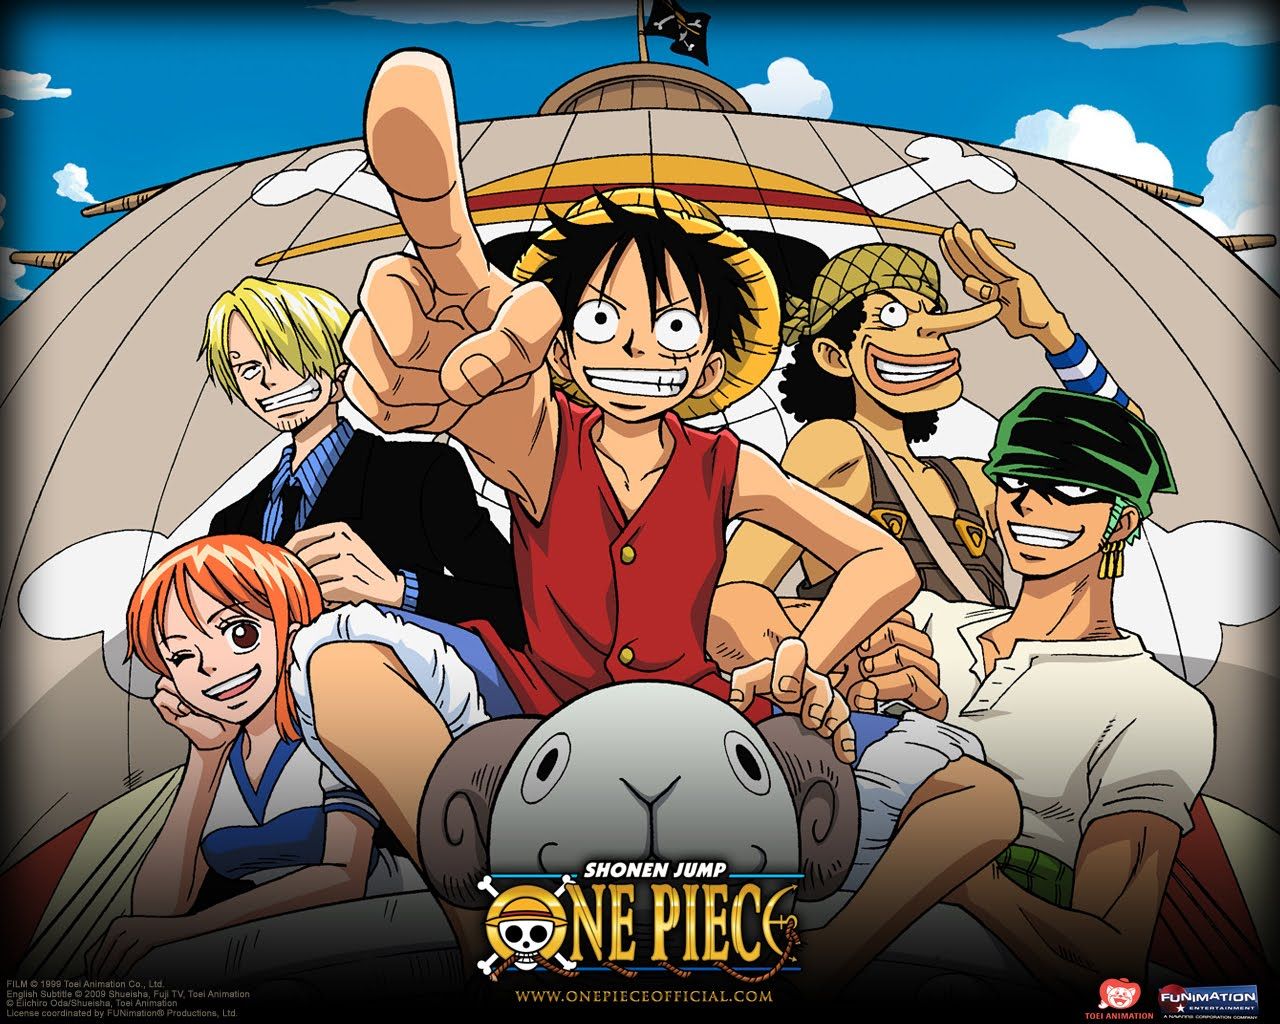 SX3 estrenará One Piece a partir del lunes 3 de julio